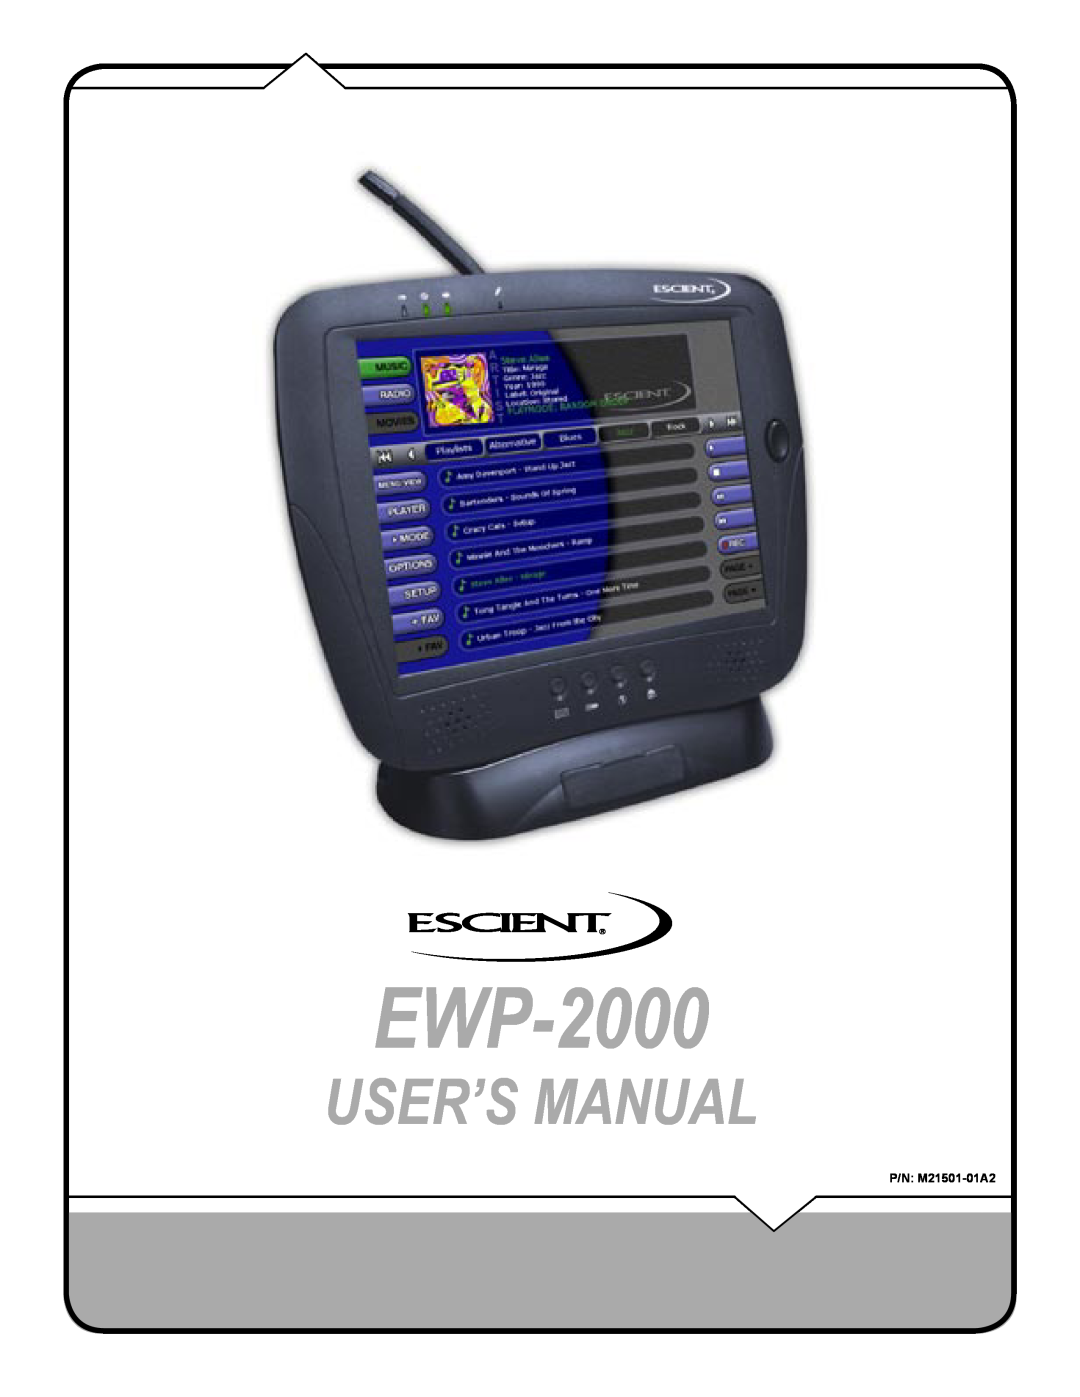 Escient EWP-2000 user manual User’S Manual 